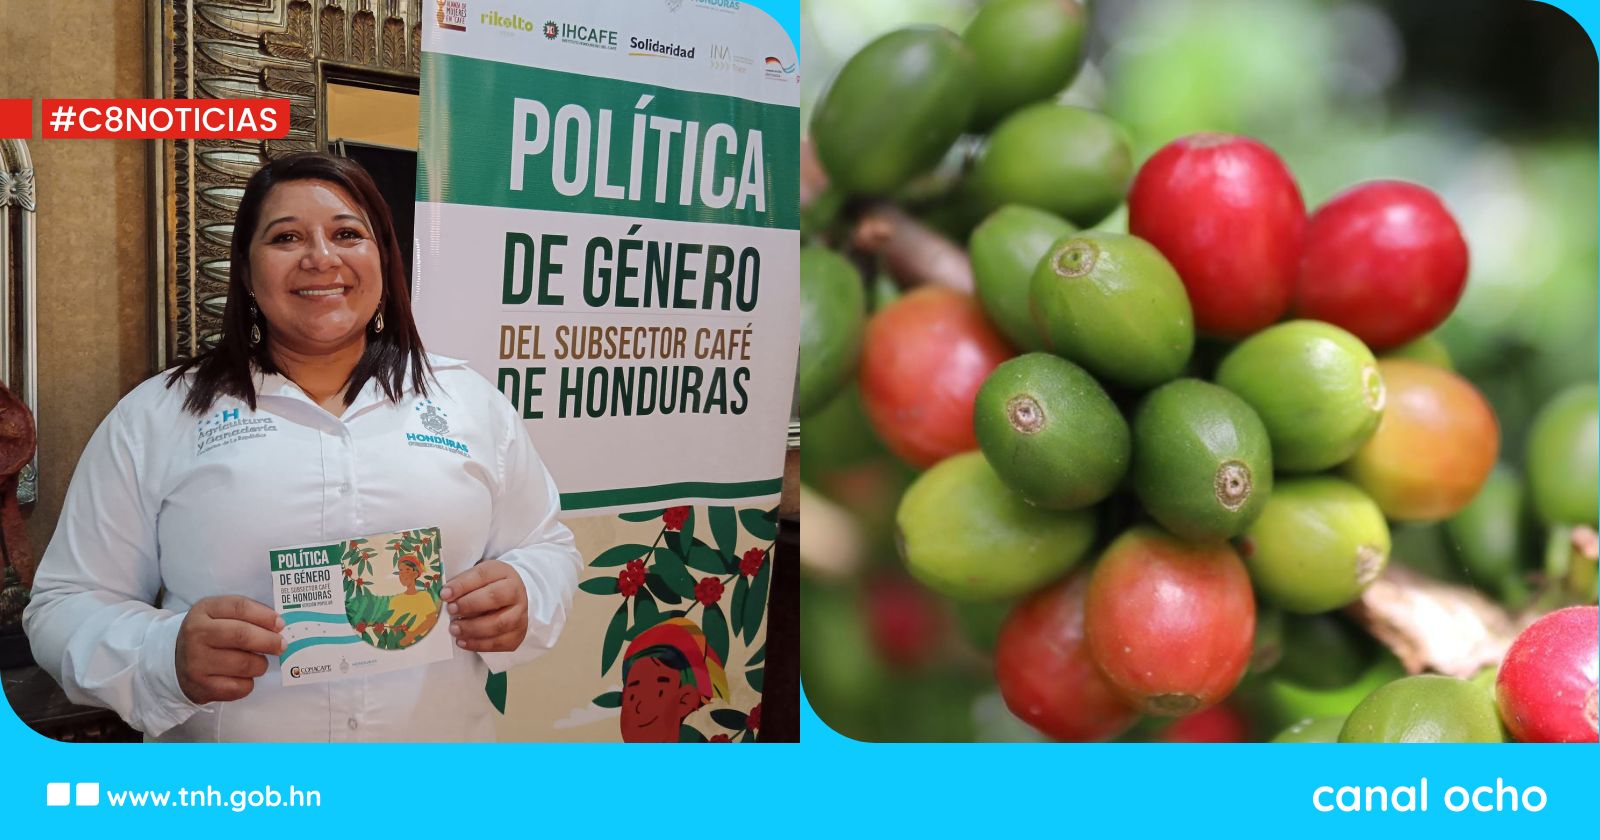 Promueven política de género del subsector café del país